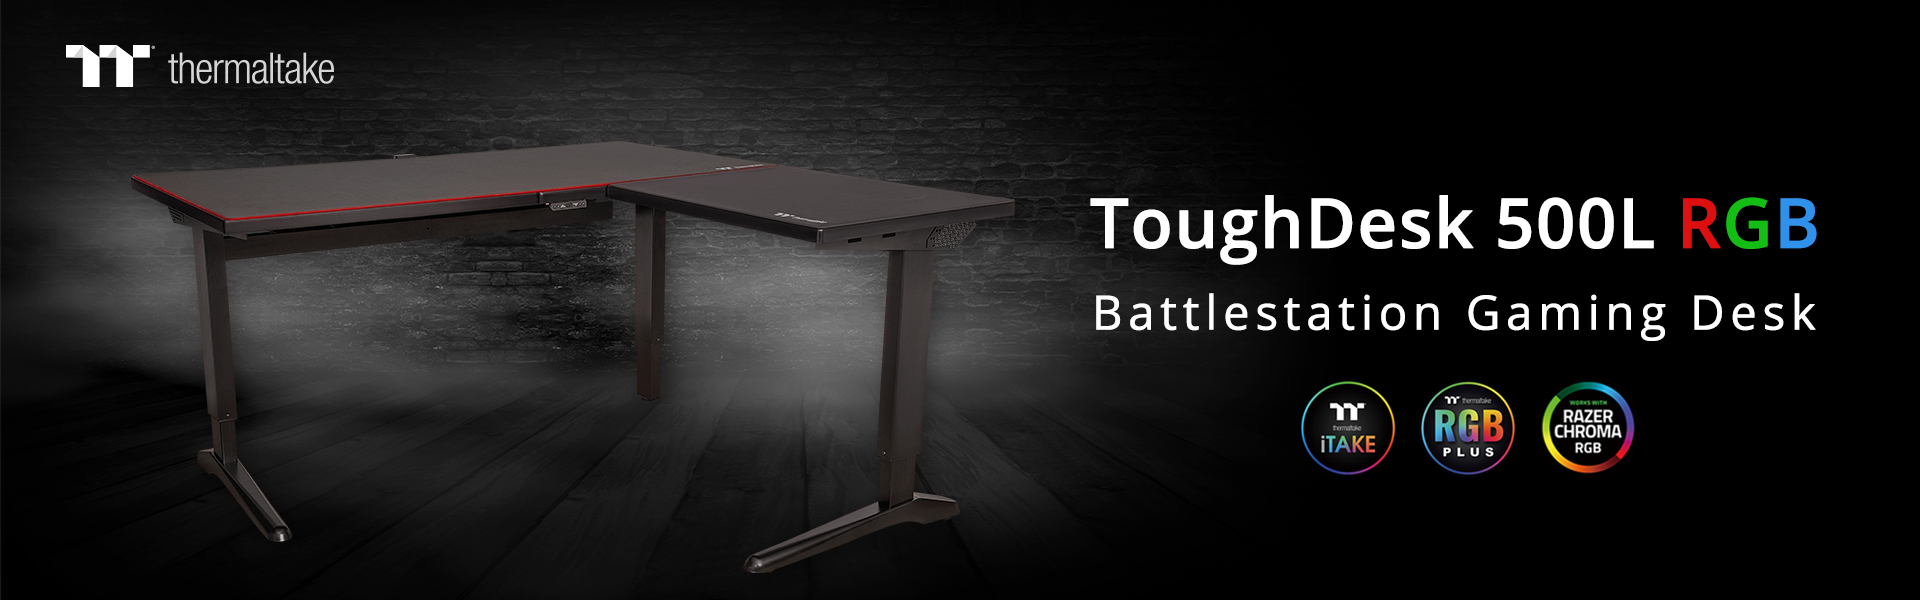 Thermaltake ToughDesk 500L RGB Battlestation Gaming Desk_2